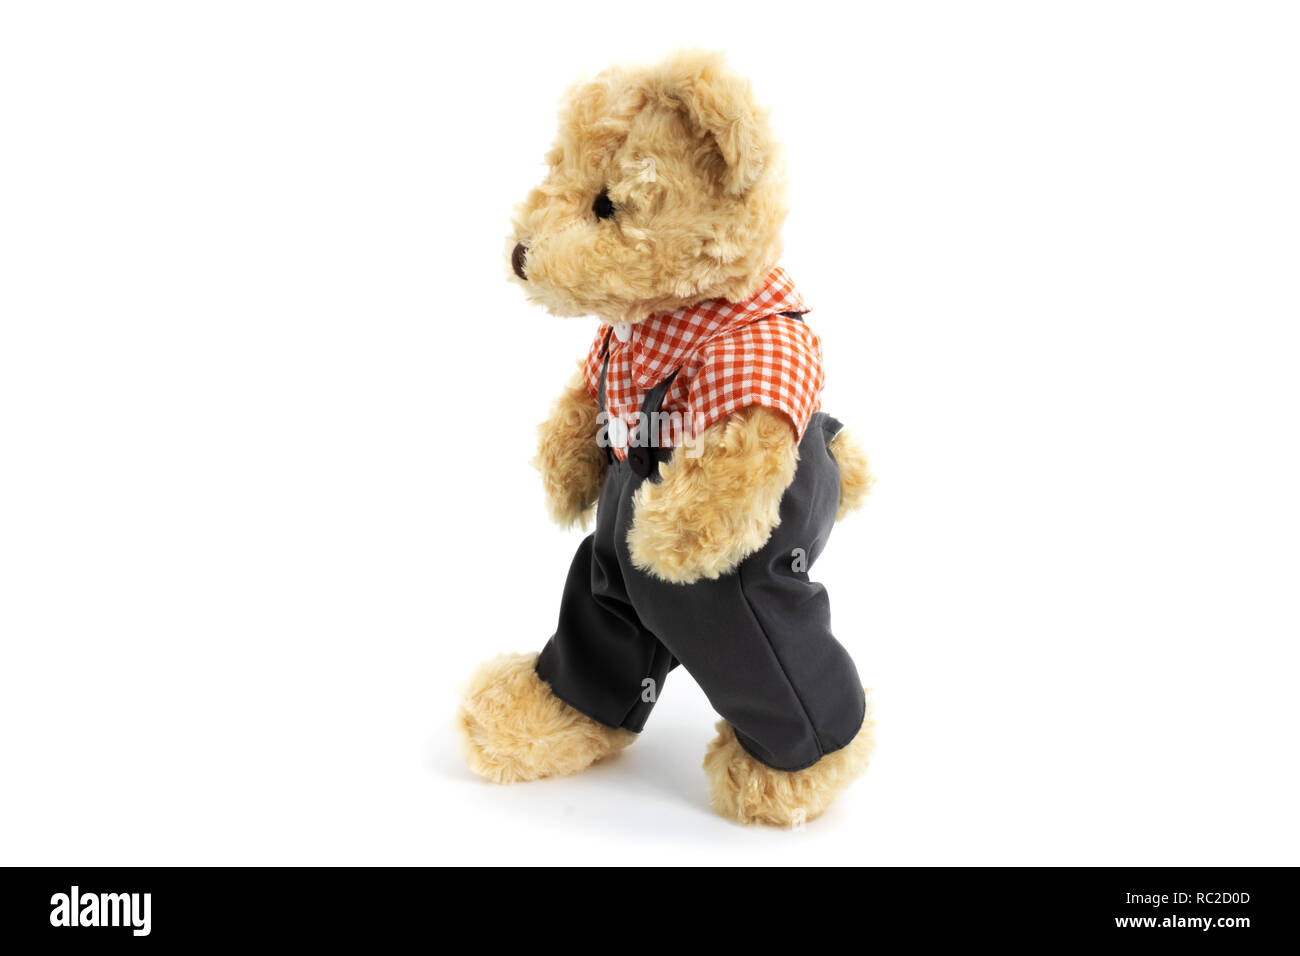 walking teddy bear toy